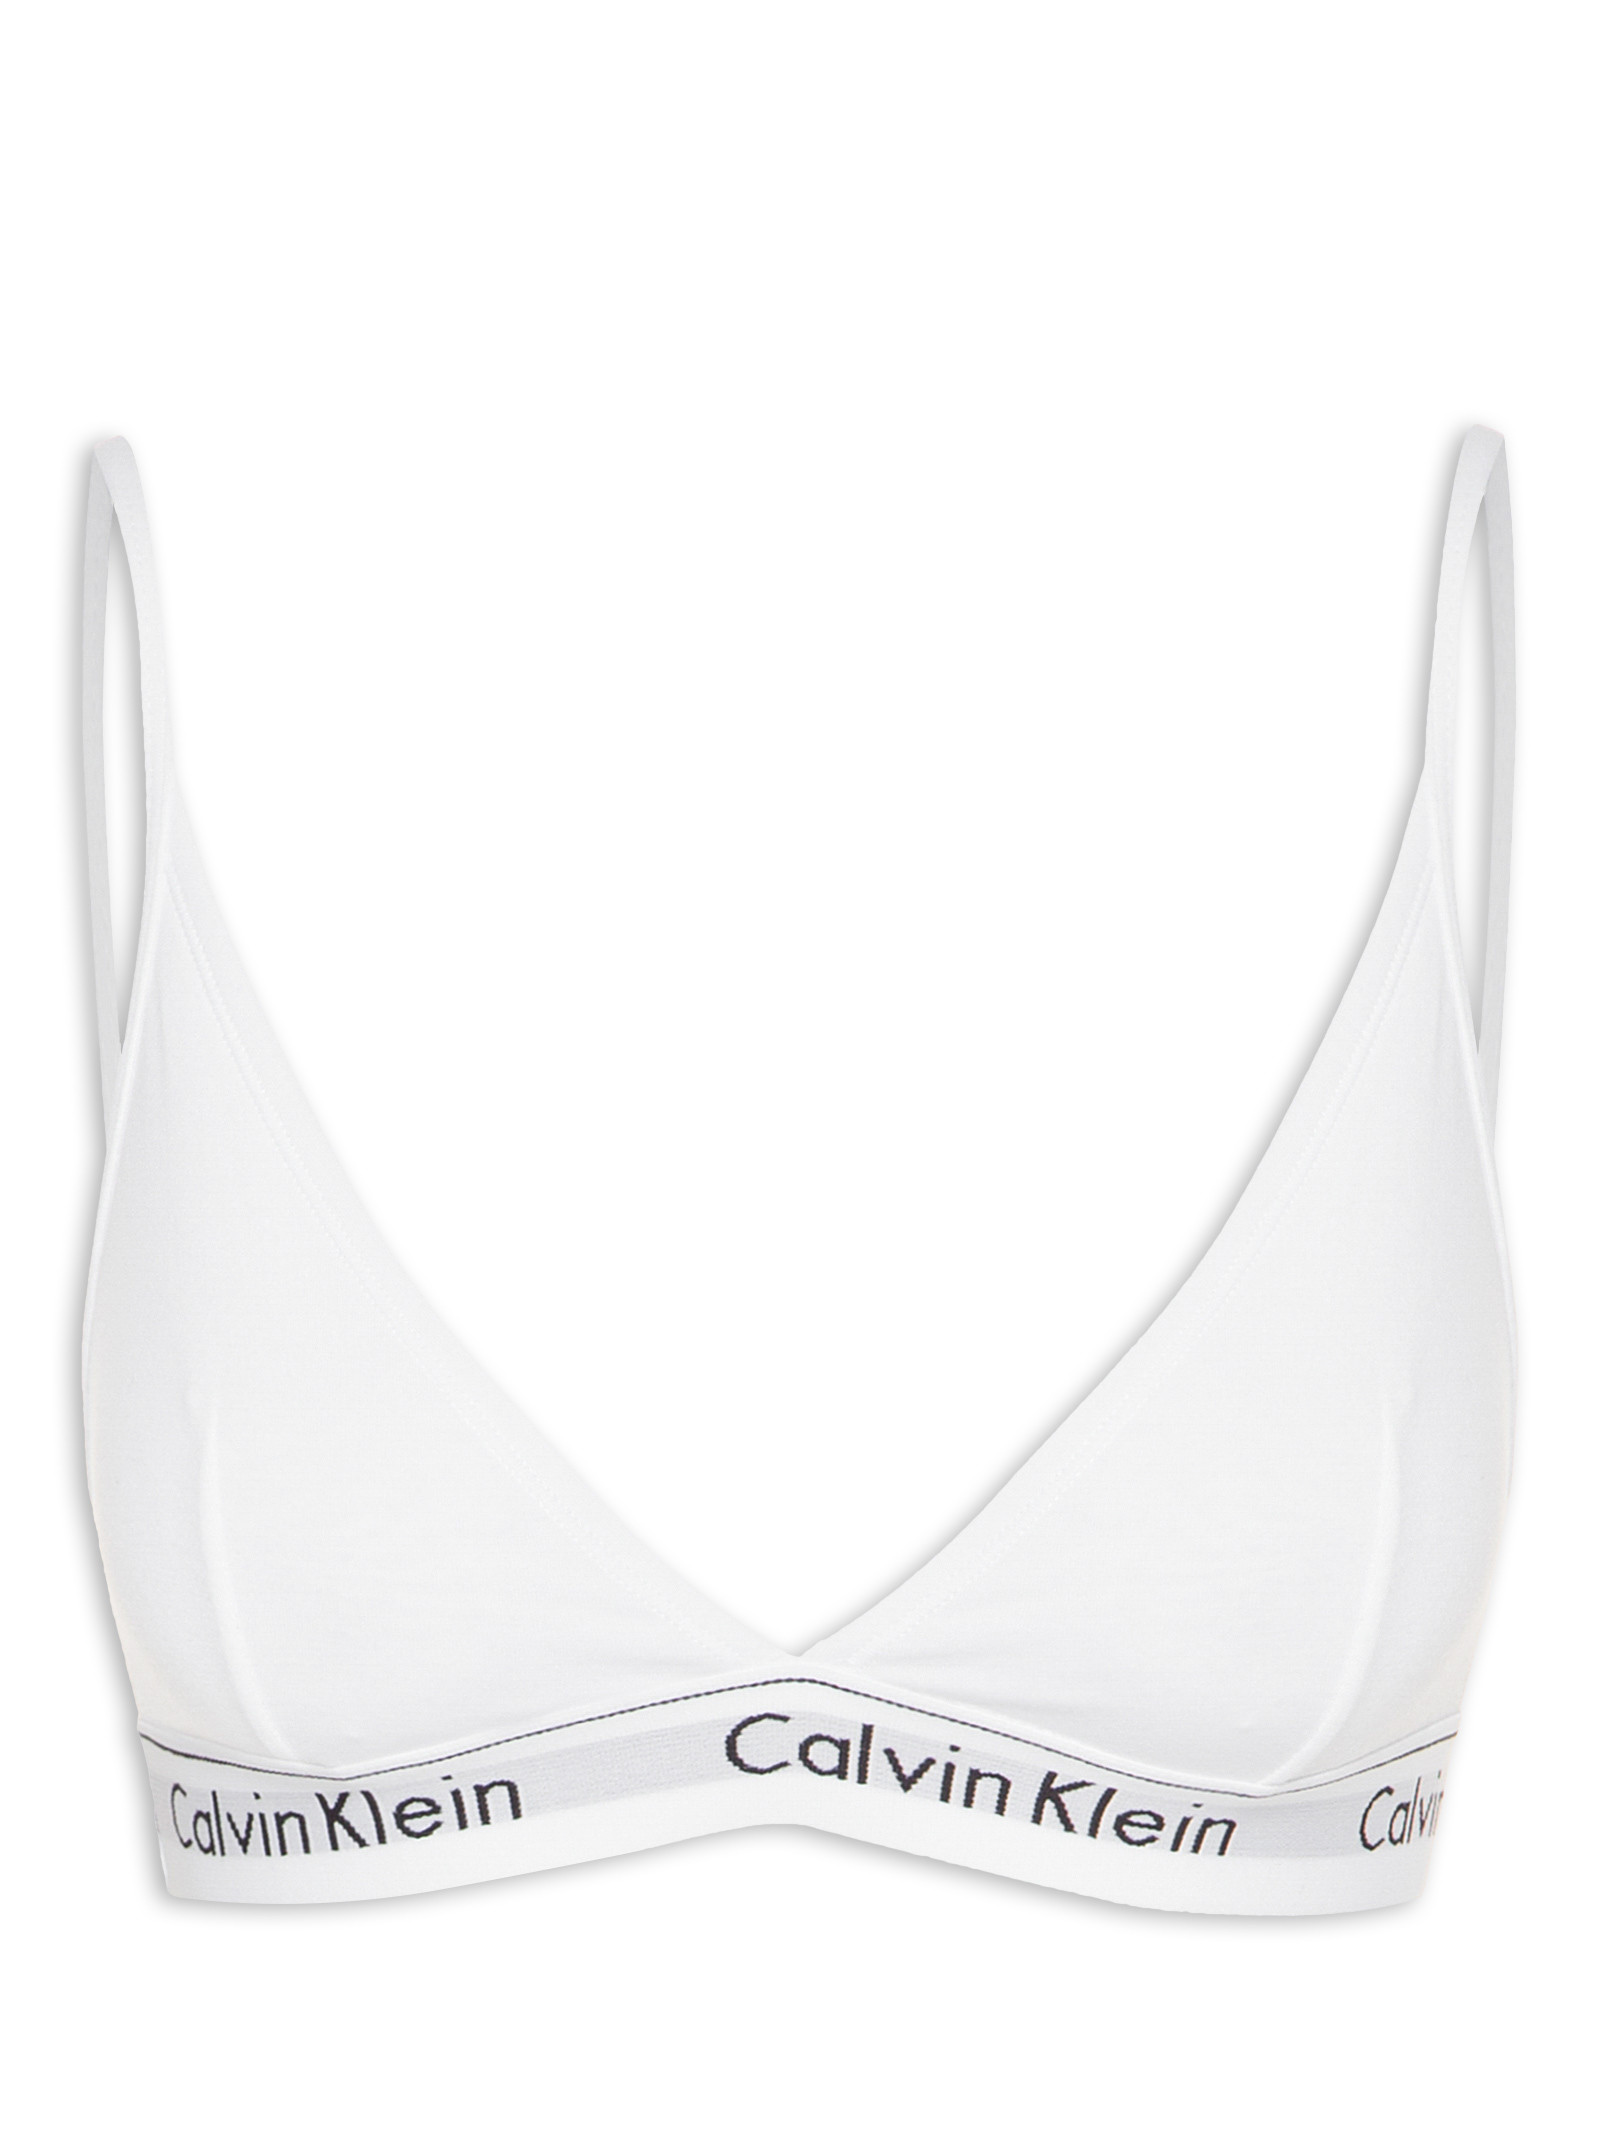 Top Triângulo Modern Cotton - Calvin Kleans Underwear - Branco